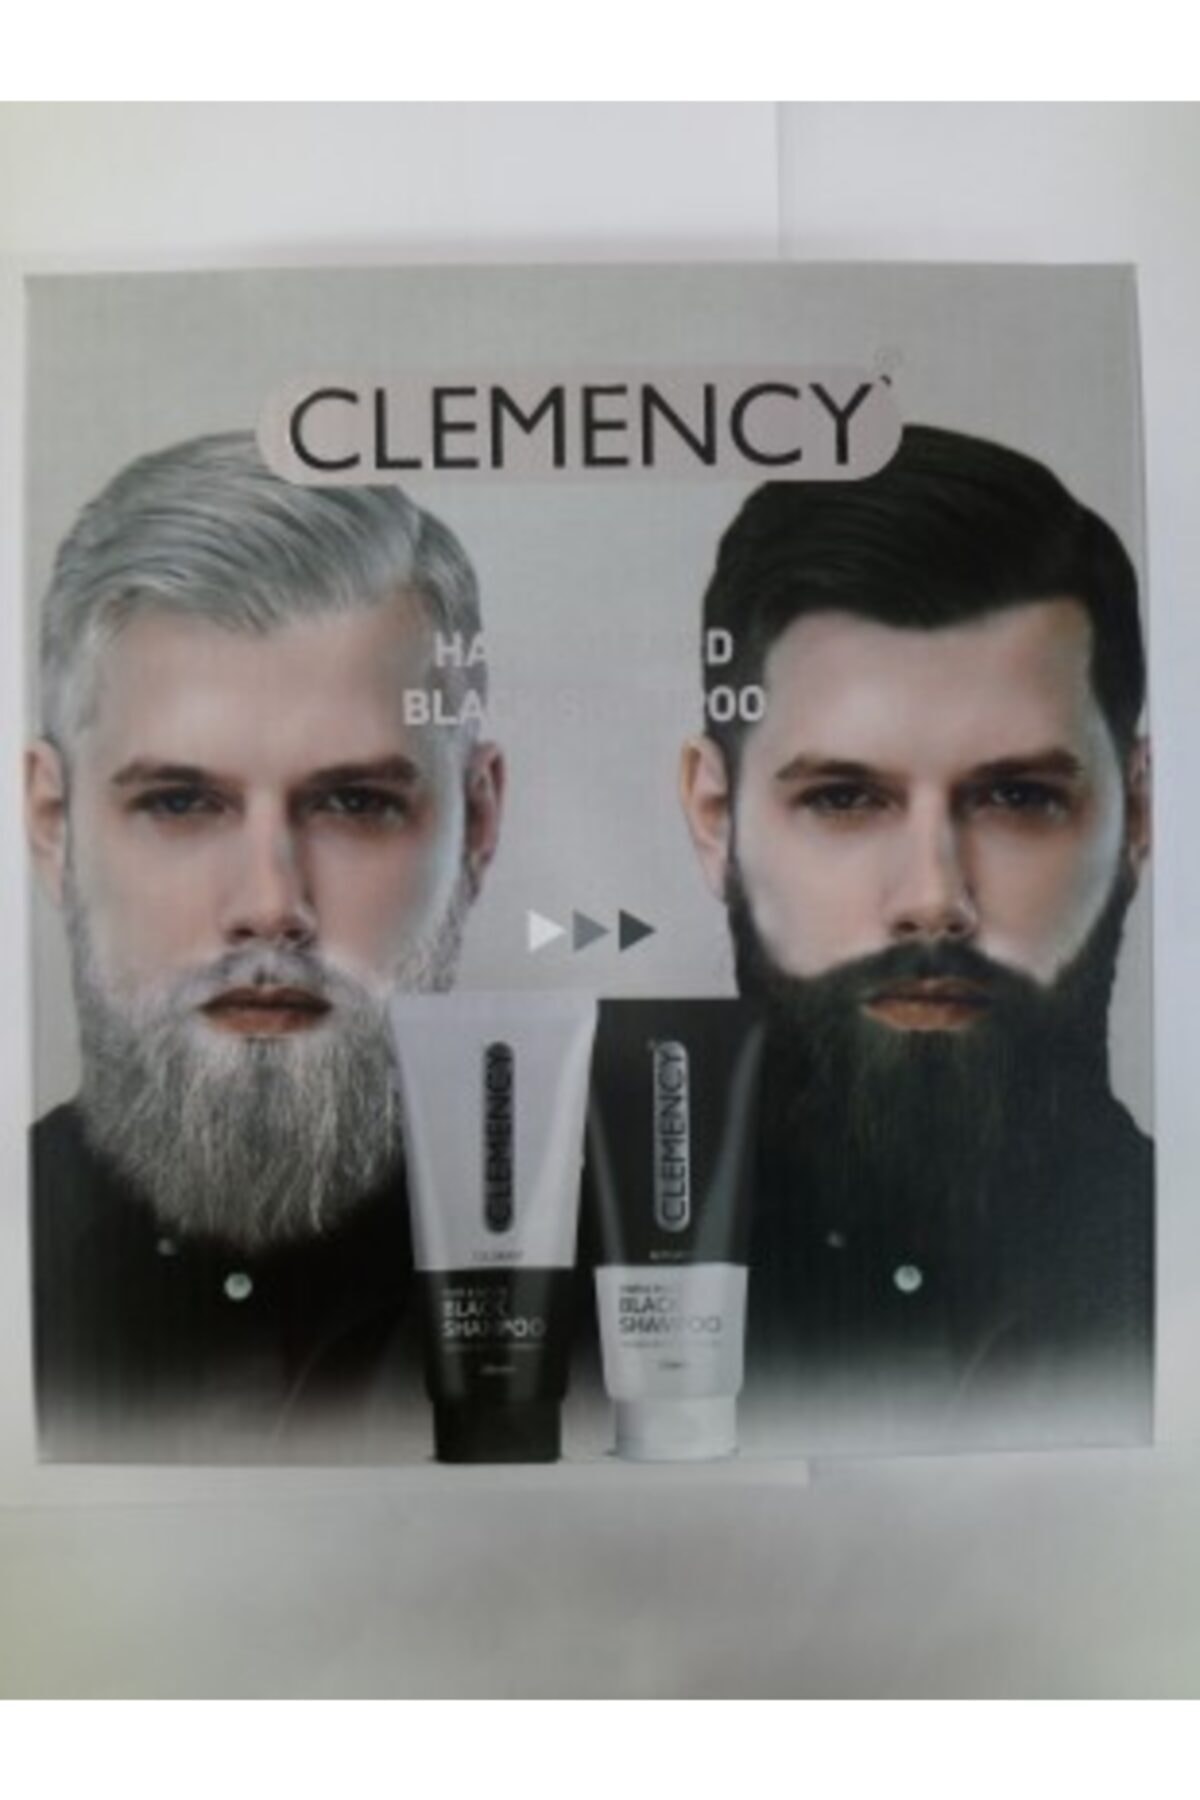 Clemency Erkek Saç( Boyası) Ve Sakal (boyası) Siyah Şampuan 200ml Colarant+200 Ml Actıvatör